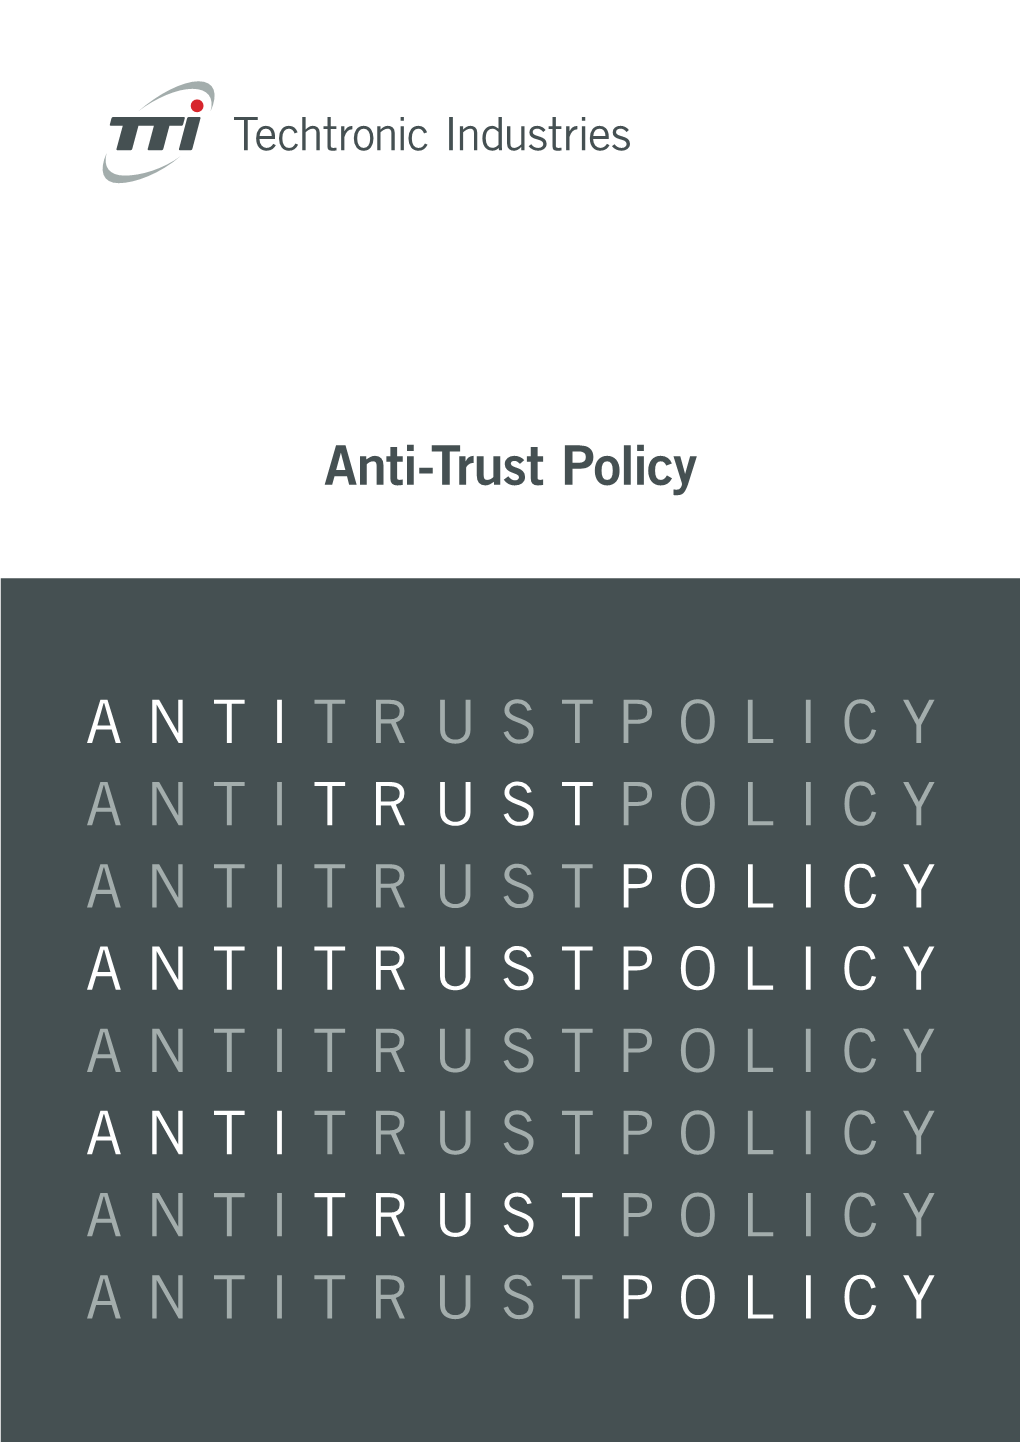 Anti Trustpolicy Anti Trust Policy Antitrust Policy Antitrustpolicy Antitrustpolicy Anti Trustpolicy Anti Trust Policy Antitrust